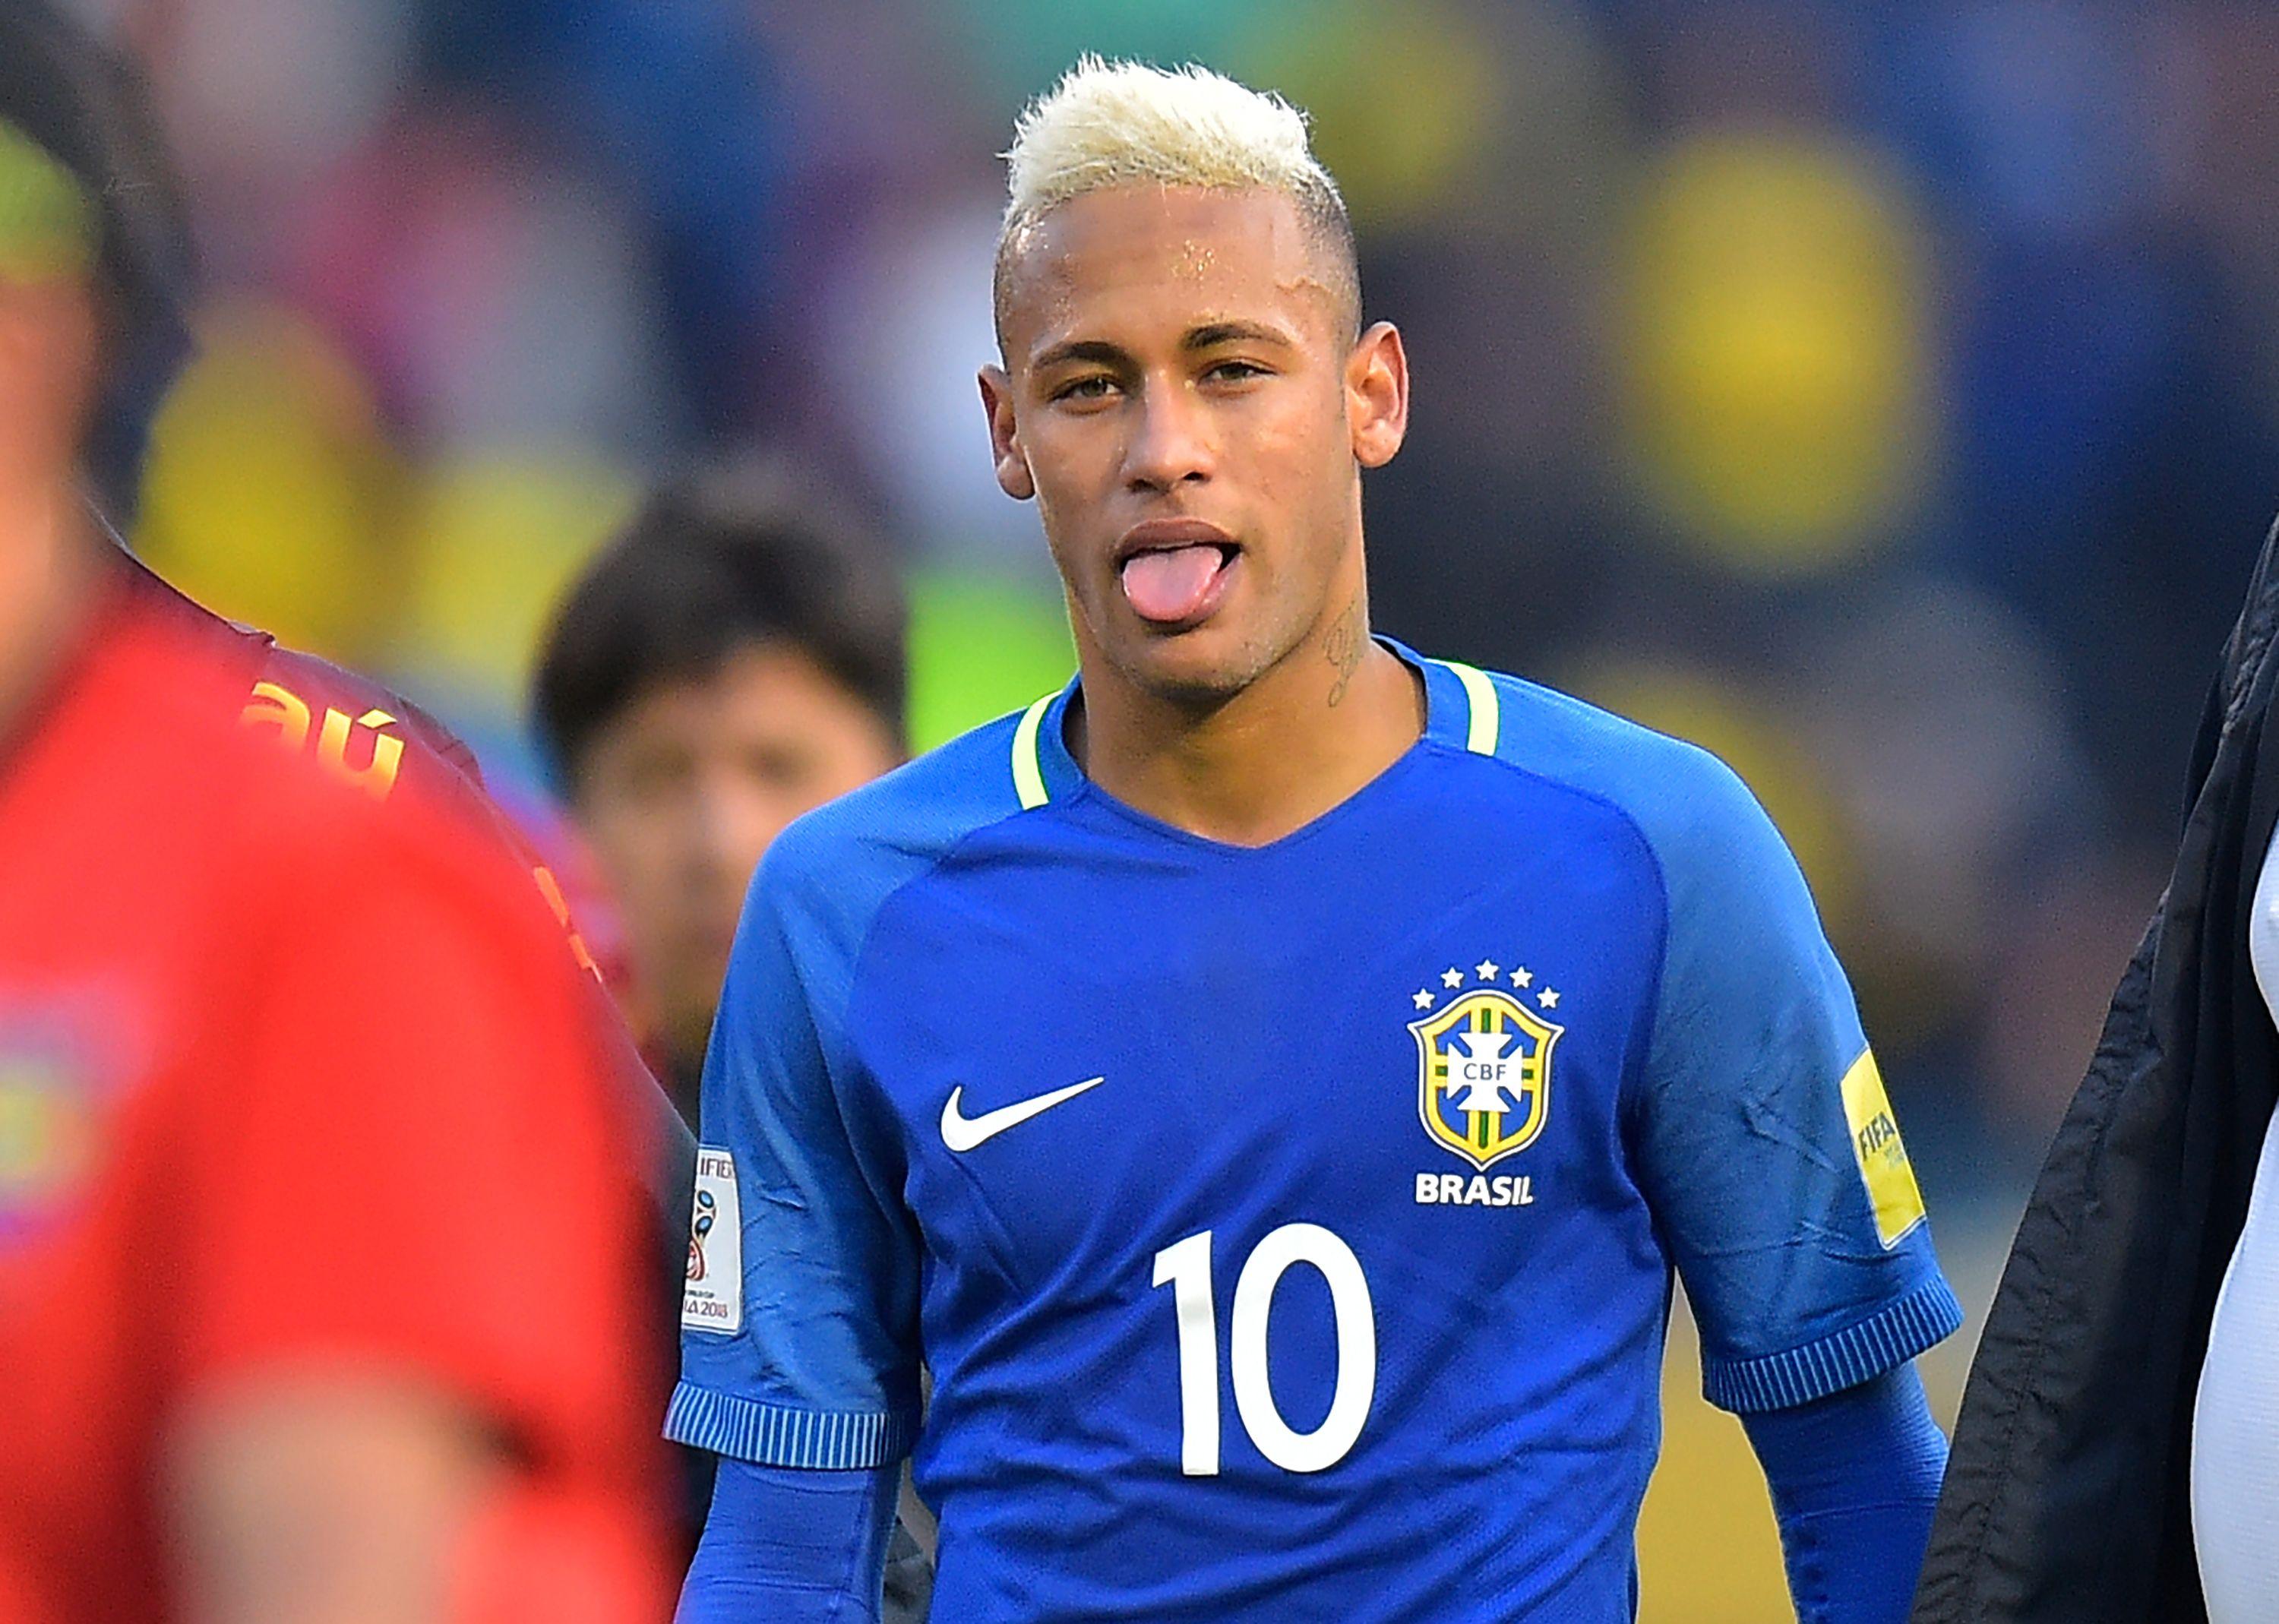 Neymar Wallpapers - Top Free Neymar Backgrounds ...